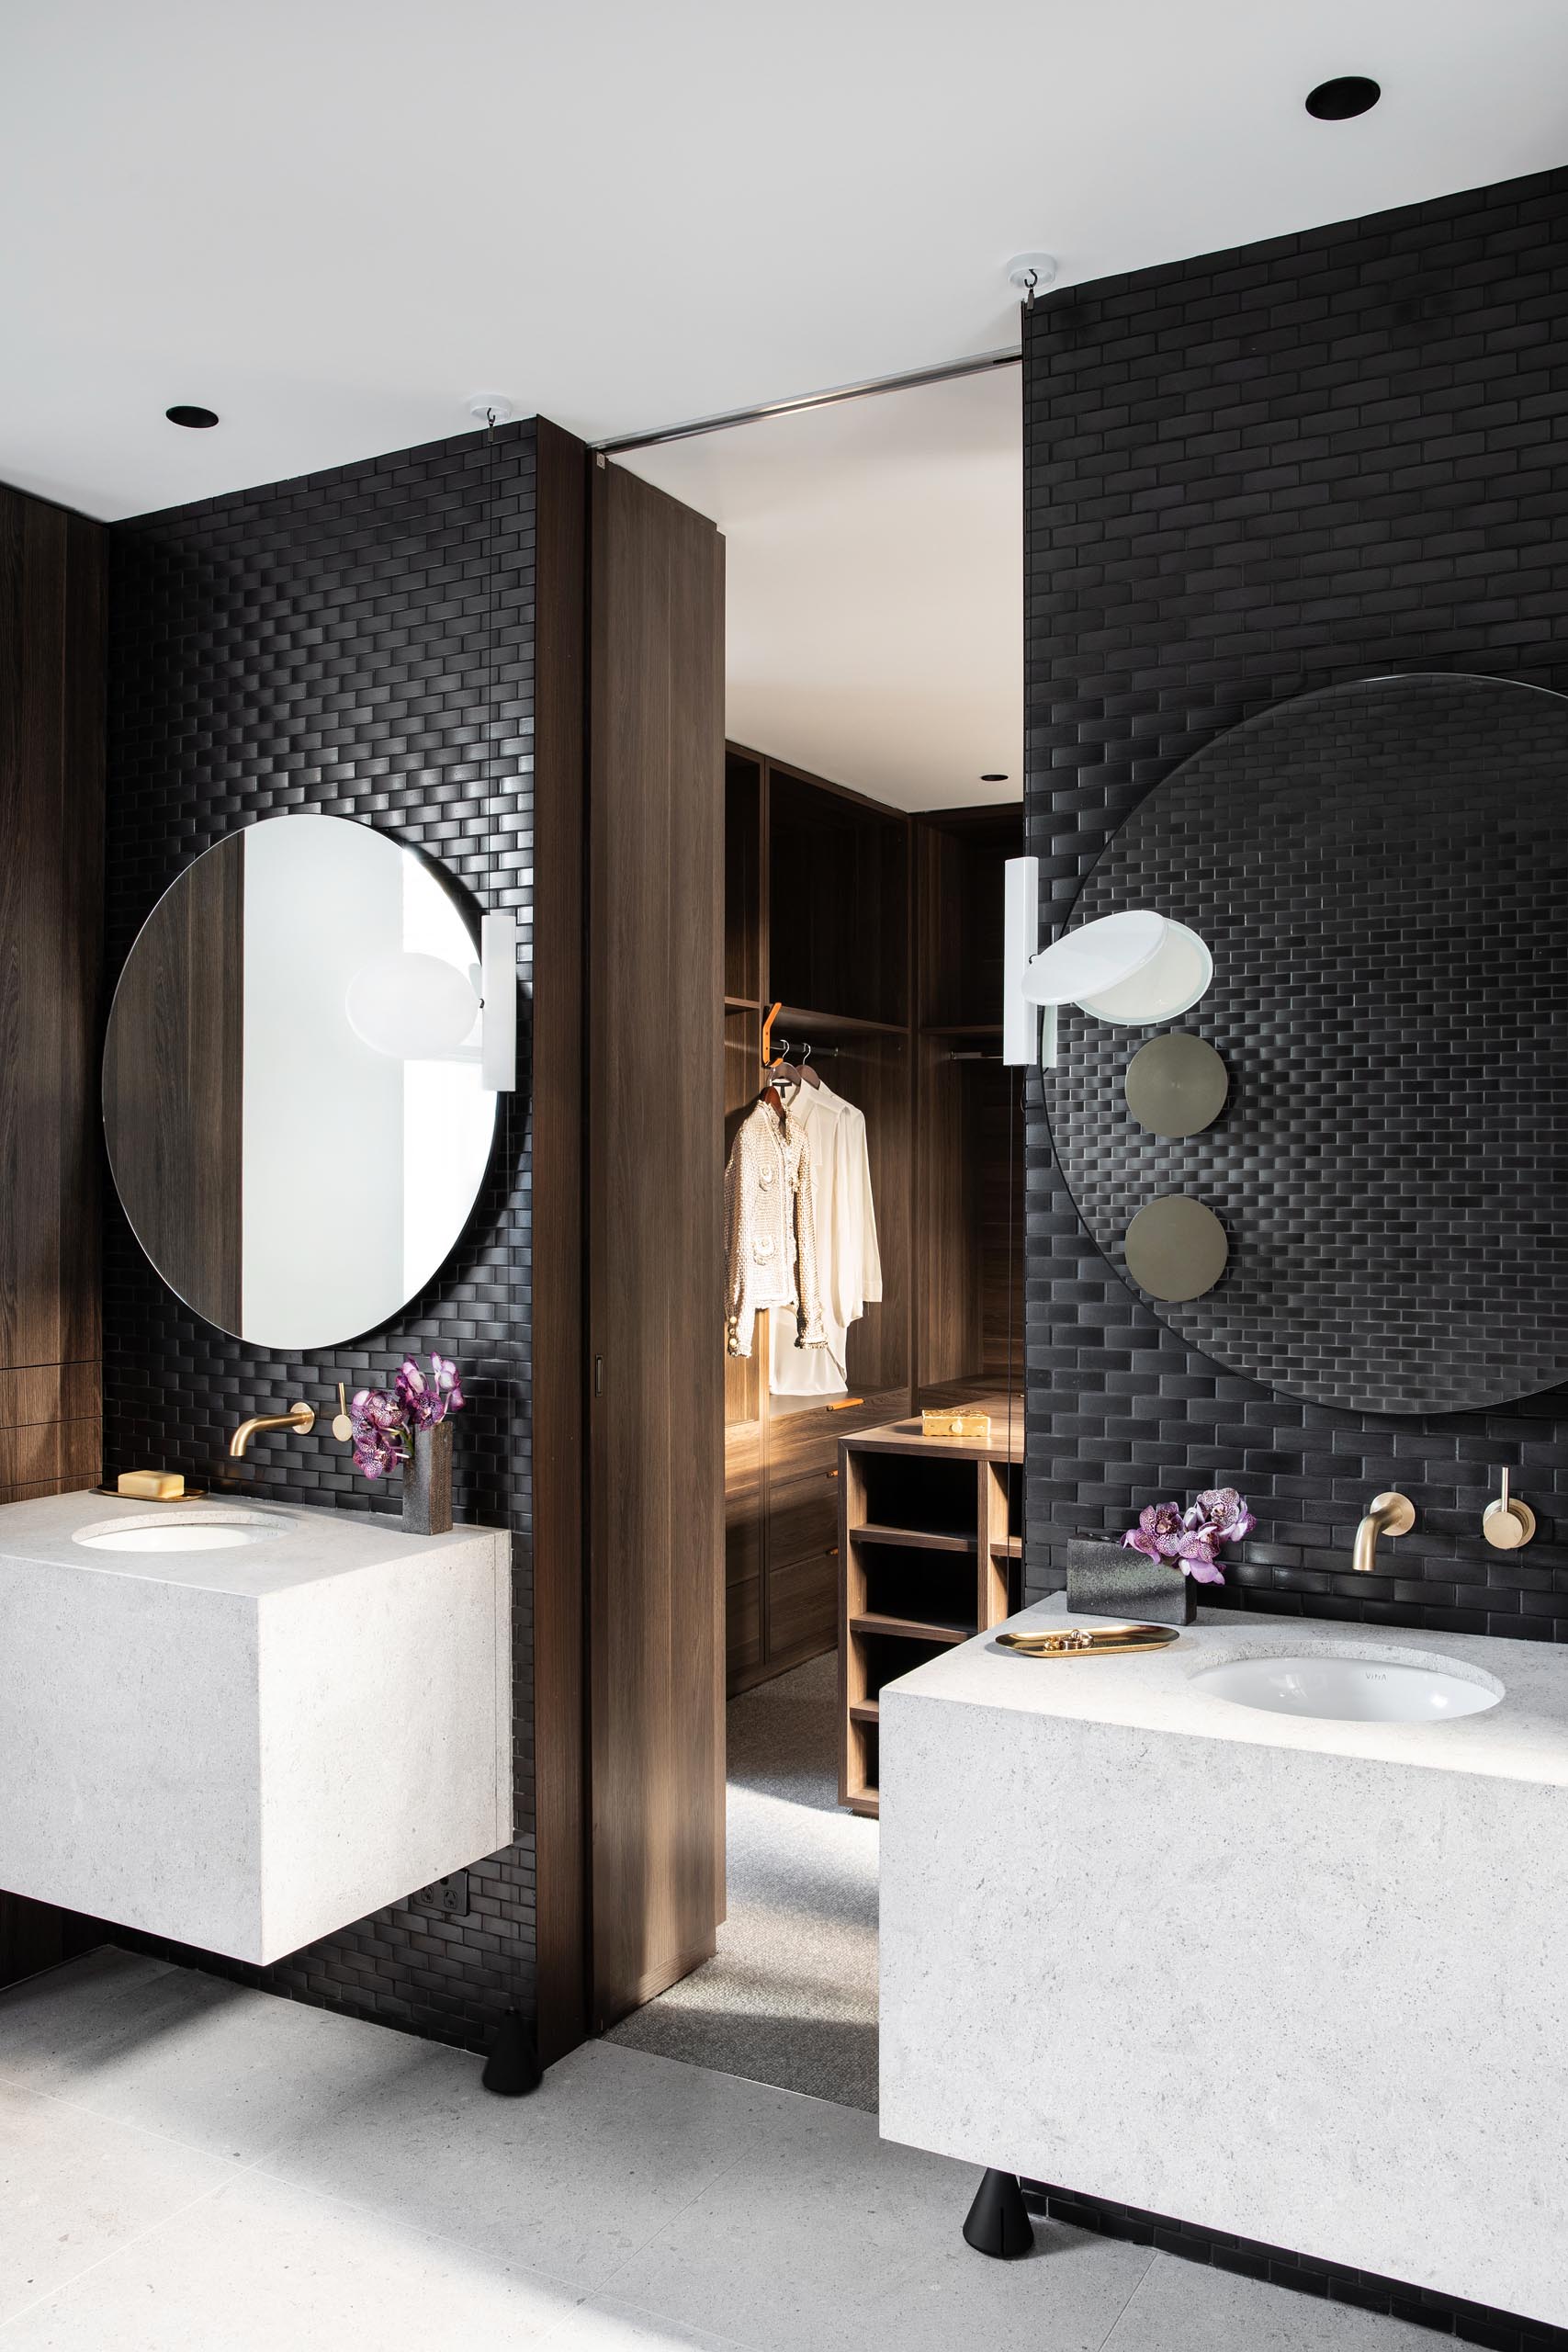 В главной ванной комнате стены покрыты черной плиткой, а круглые зеркала висят над белыми туалетными столиками с раковинами под ними.